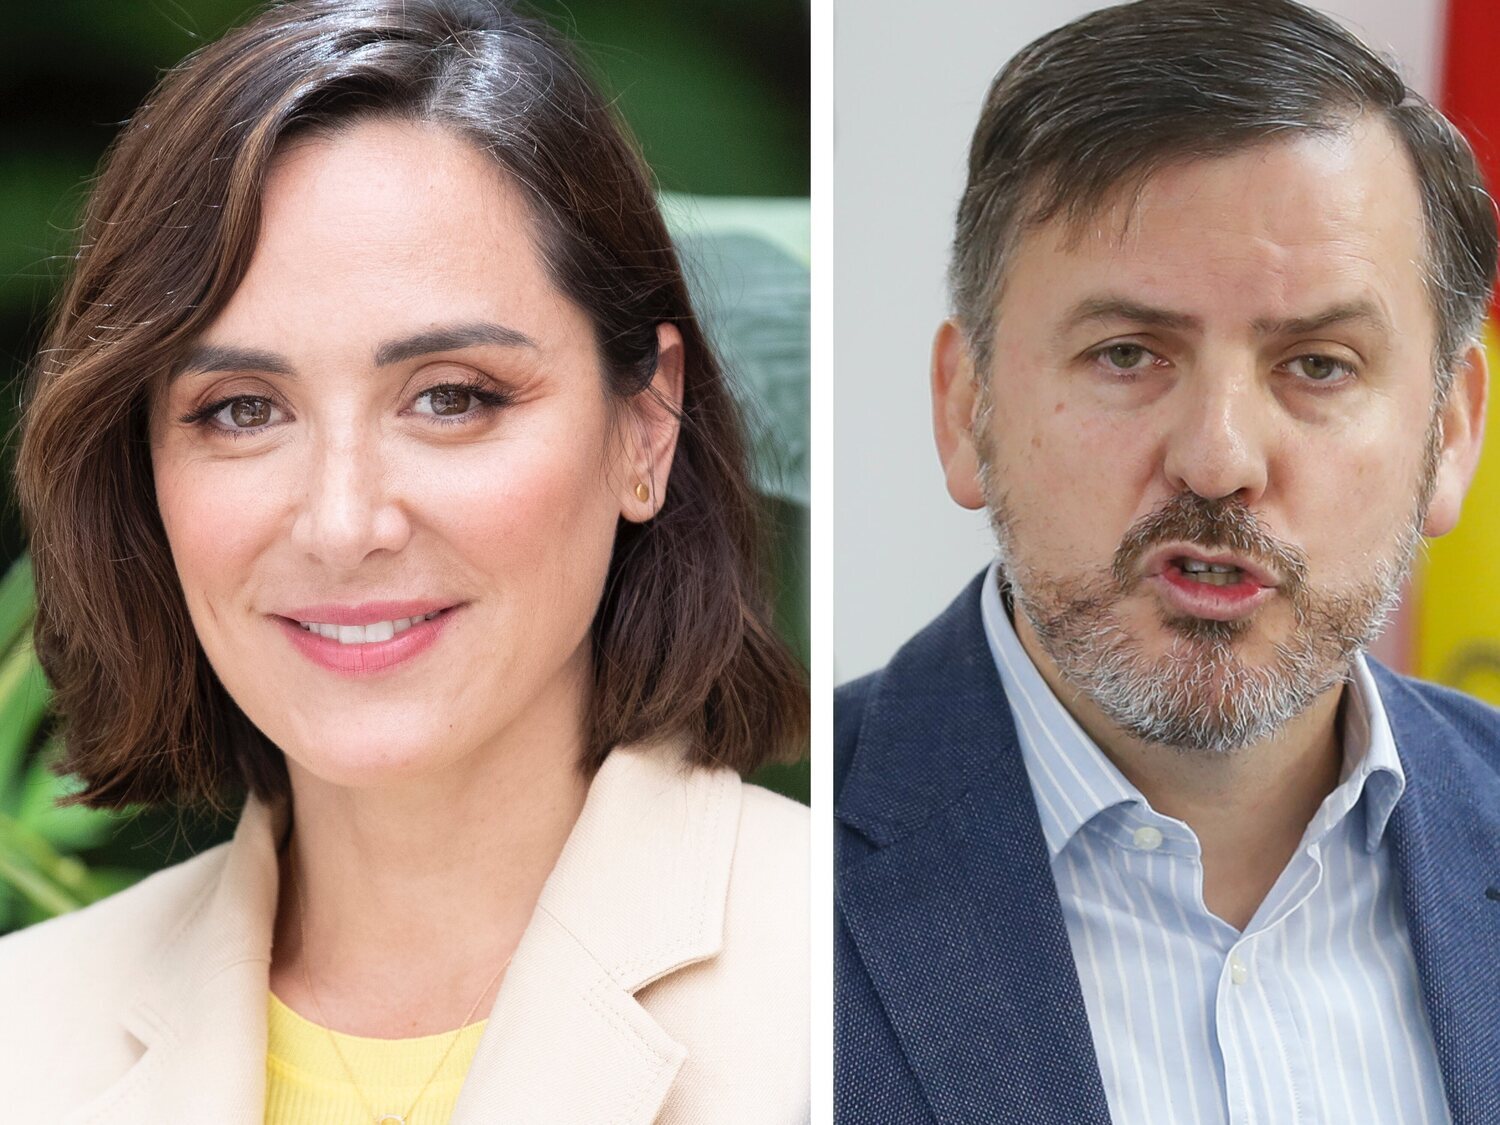 Tamara Falcó participará como ponente en un congreso ultracatólico junto al líder de Hazte Oír, Ignacio Arsuaga